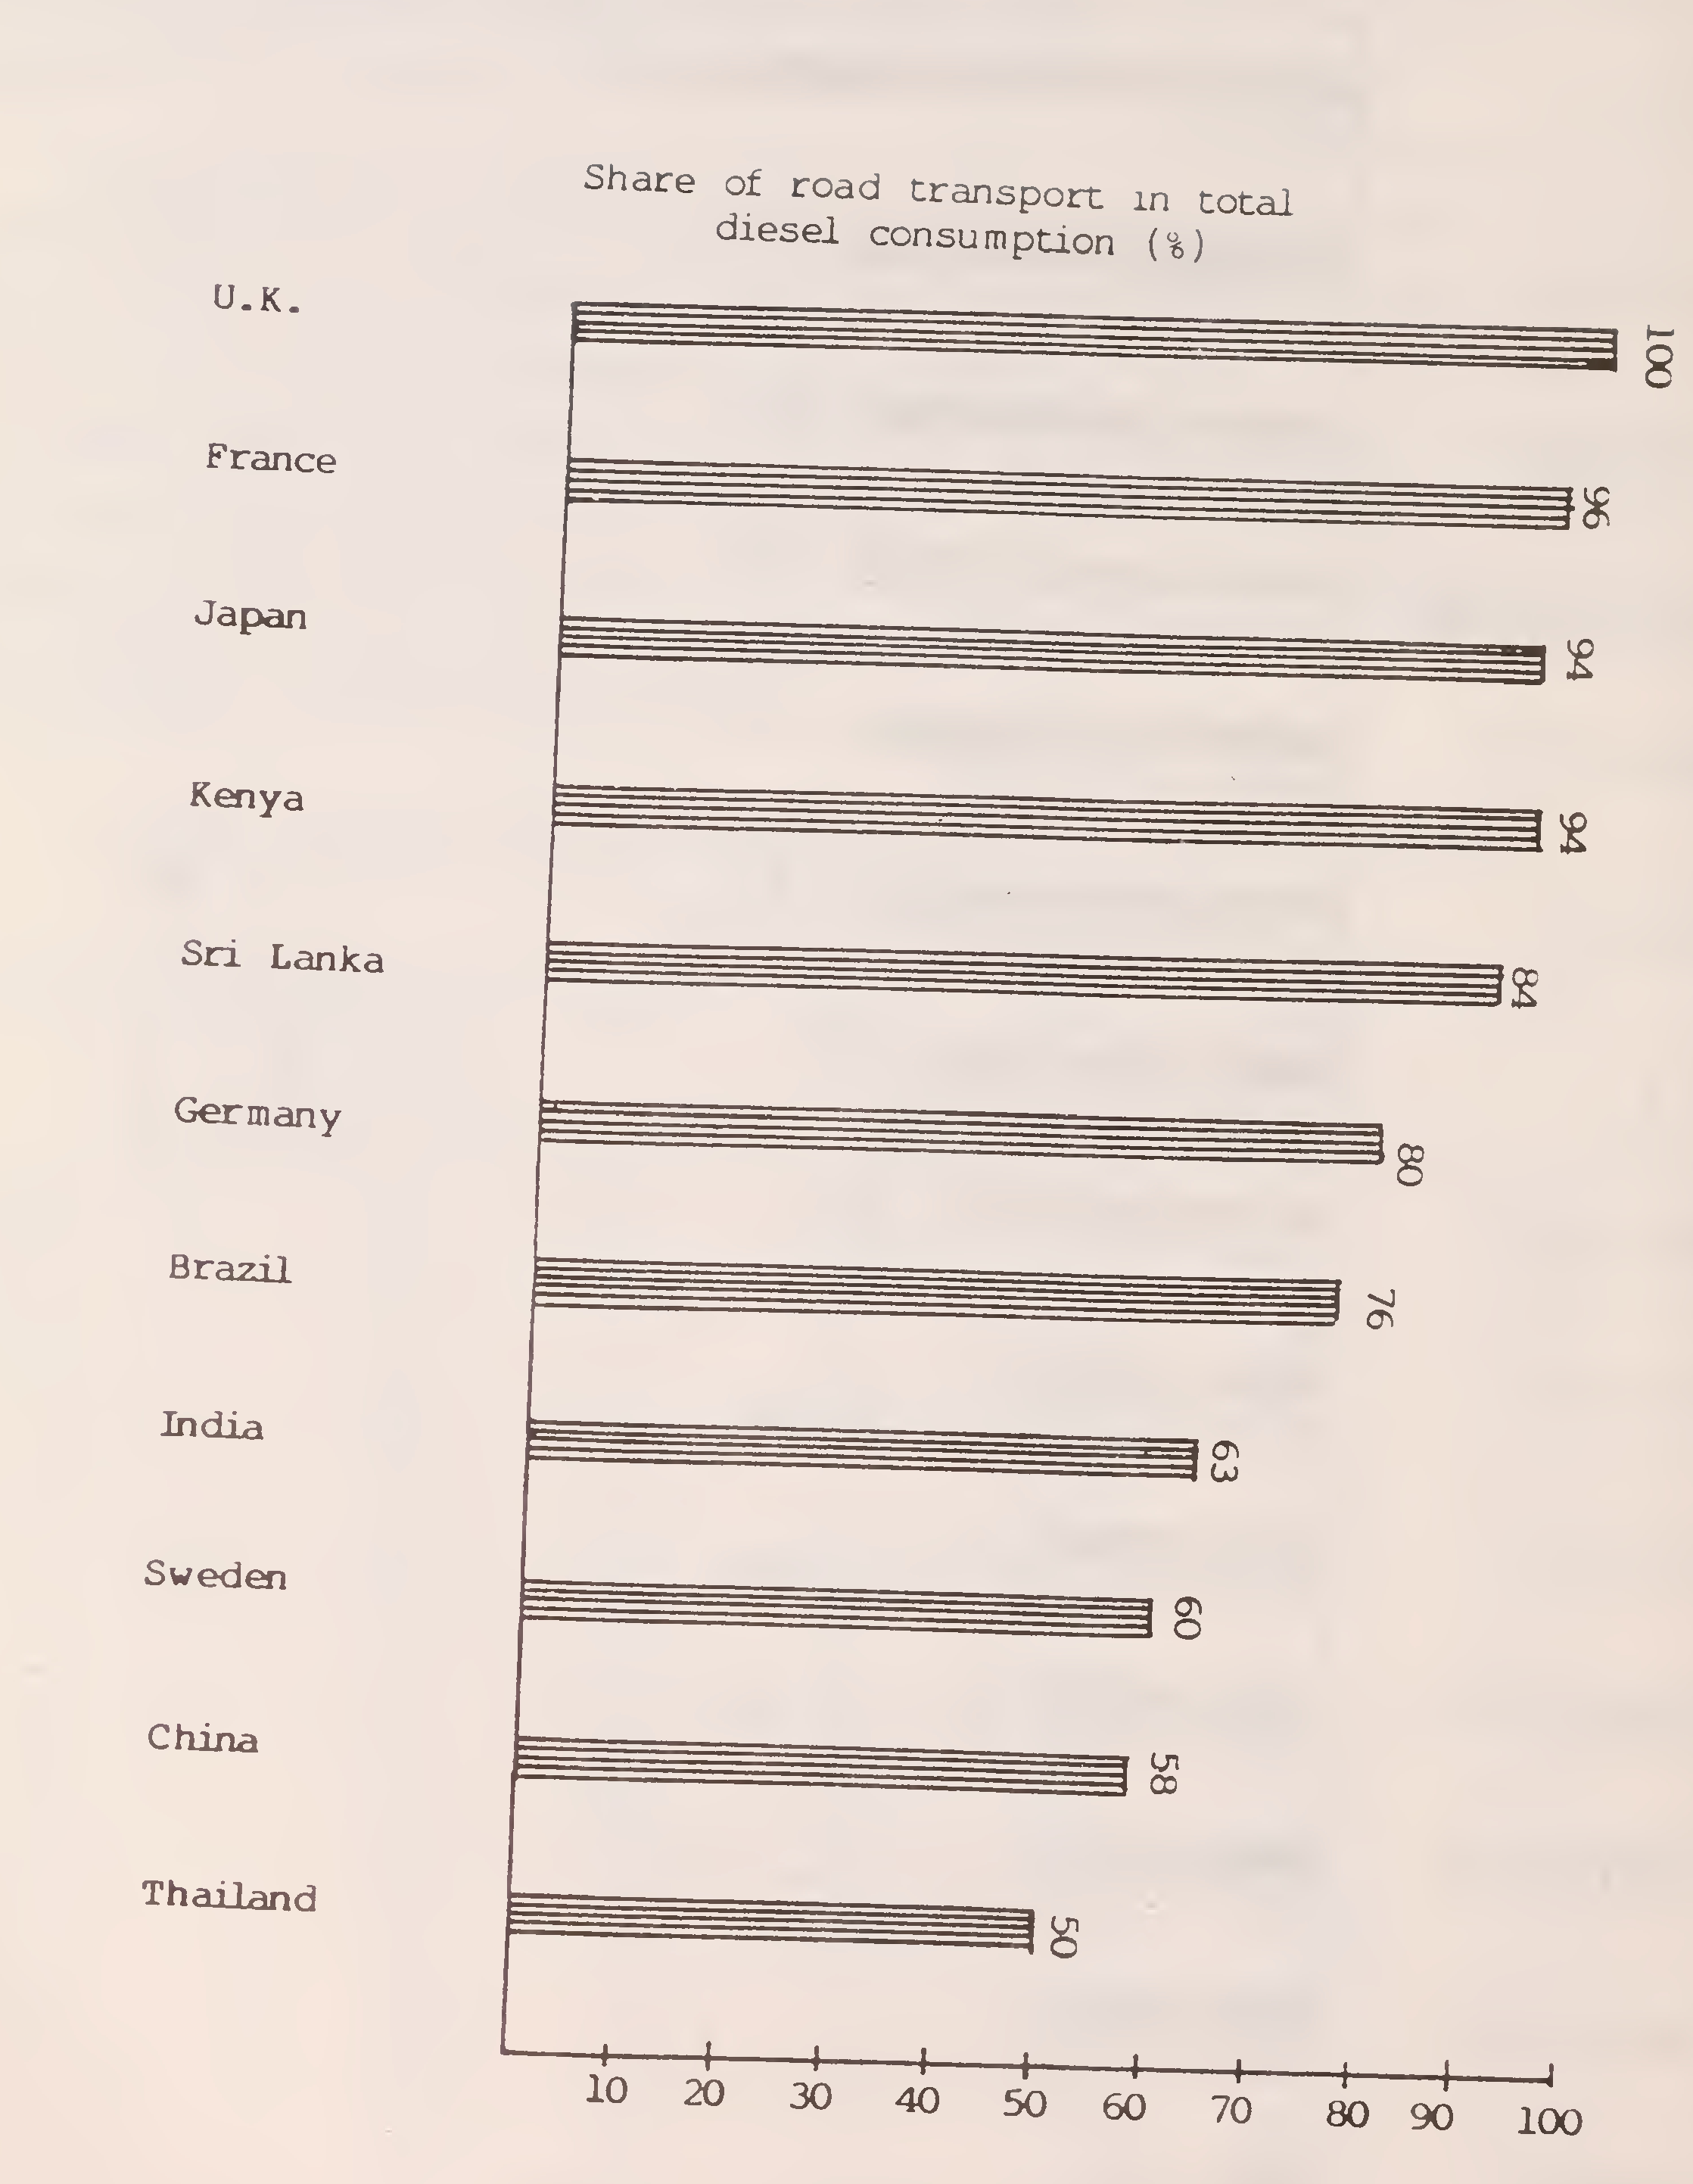 ફિગ. 14. પસંદ કરેલા દેશોમાં ડીઝલના કુલ વપરાશમાં માર્ગ પરિવહનનો હિસ્સો